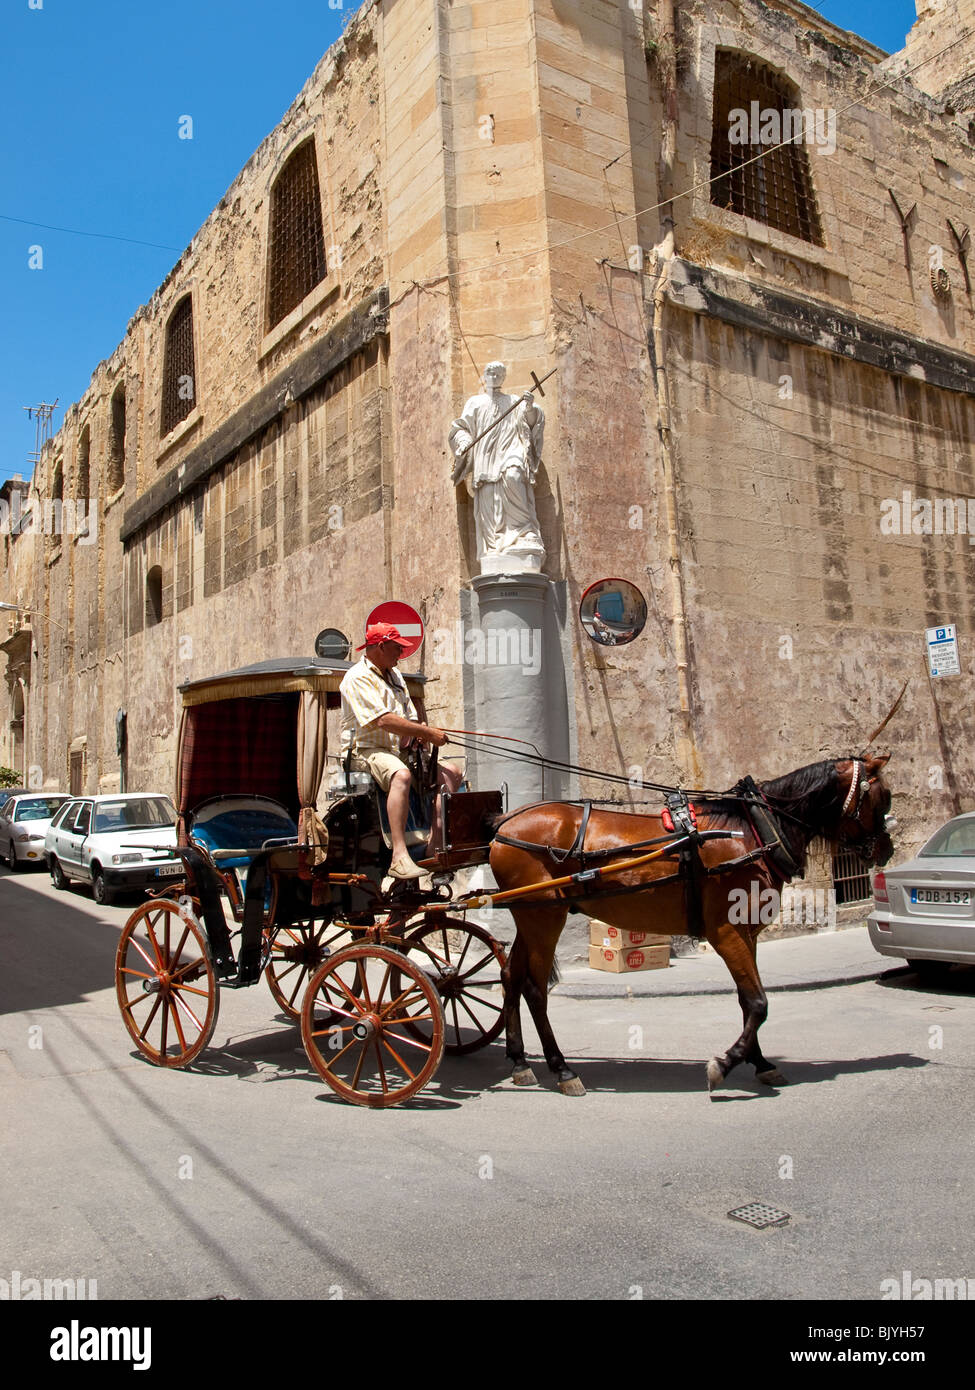 Horse cart in Valetta Malta Stock Photo